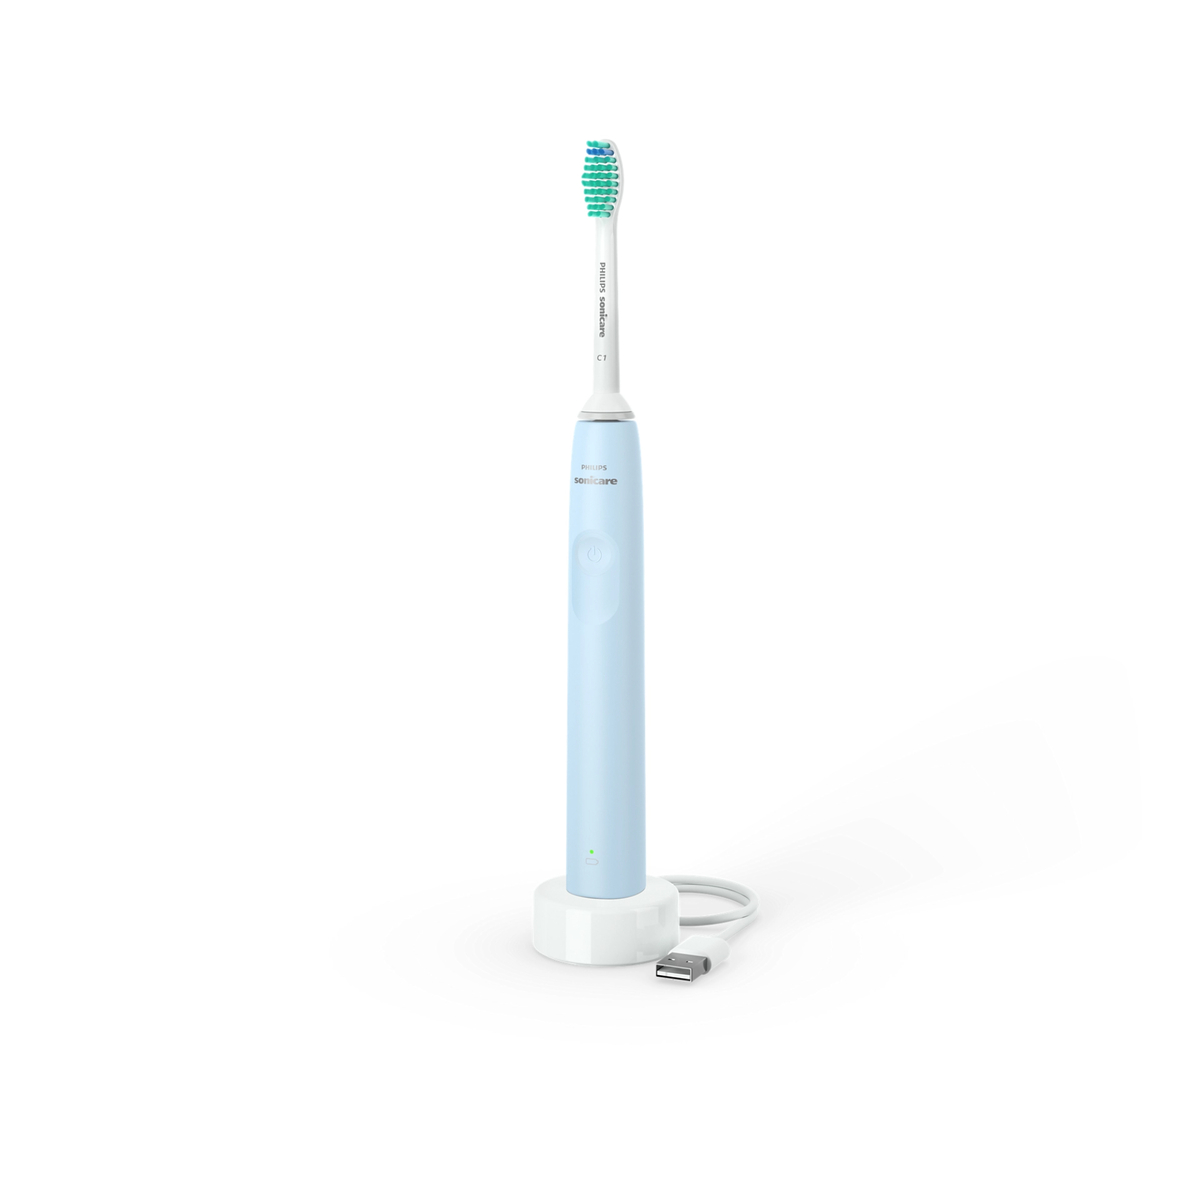 فيلبس سونيكير فرشاة أسنان كهربائية سلسلة 2100 ، أزرق فاتح ، HX3651/12